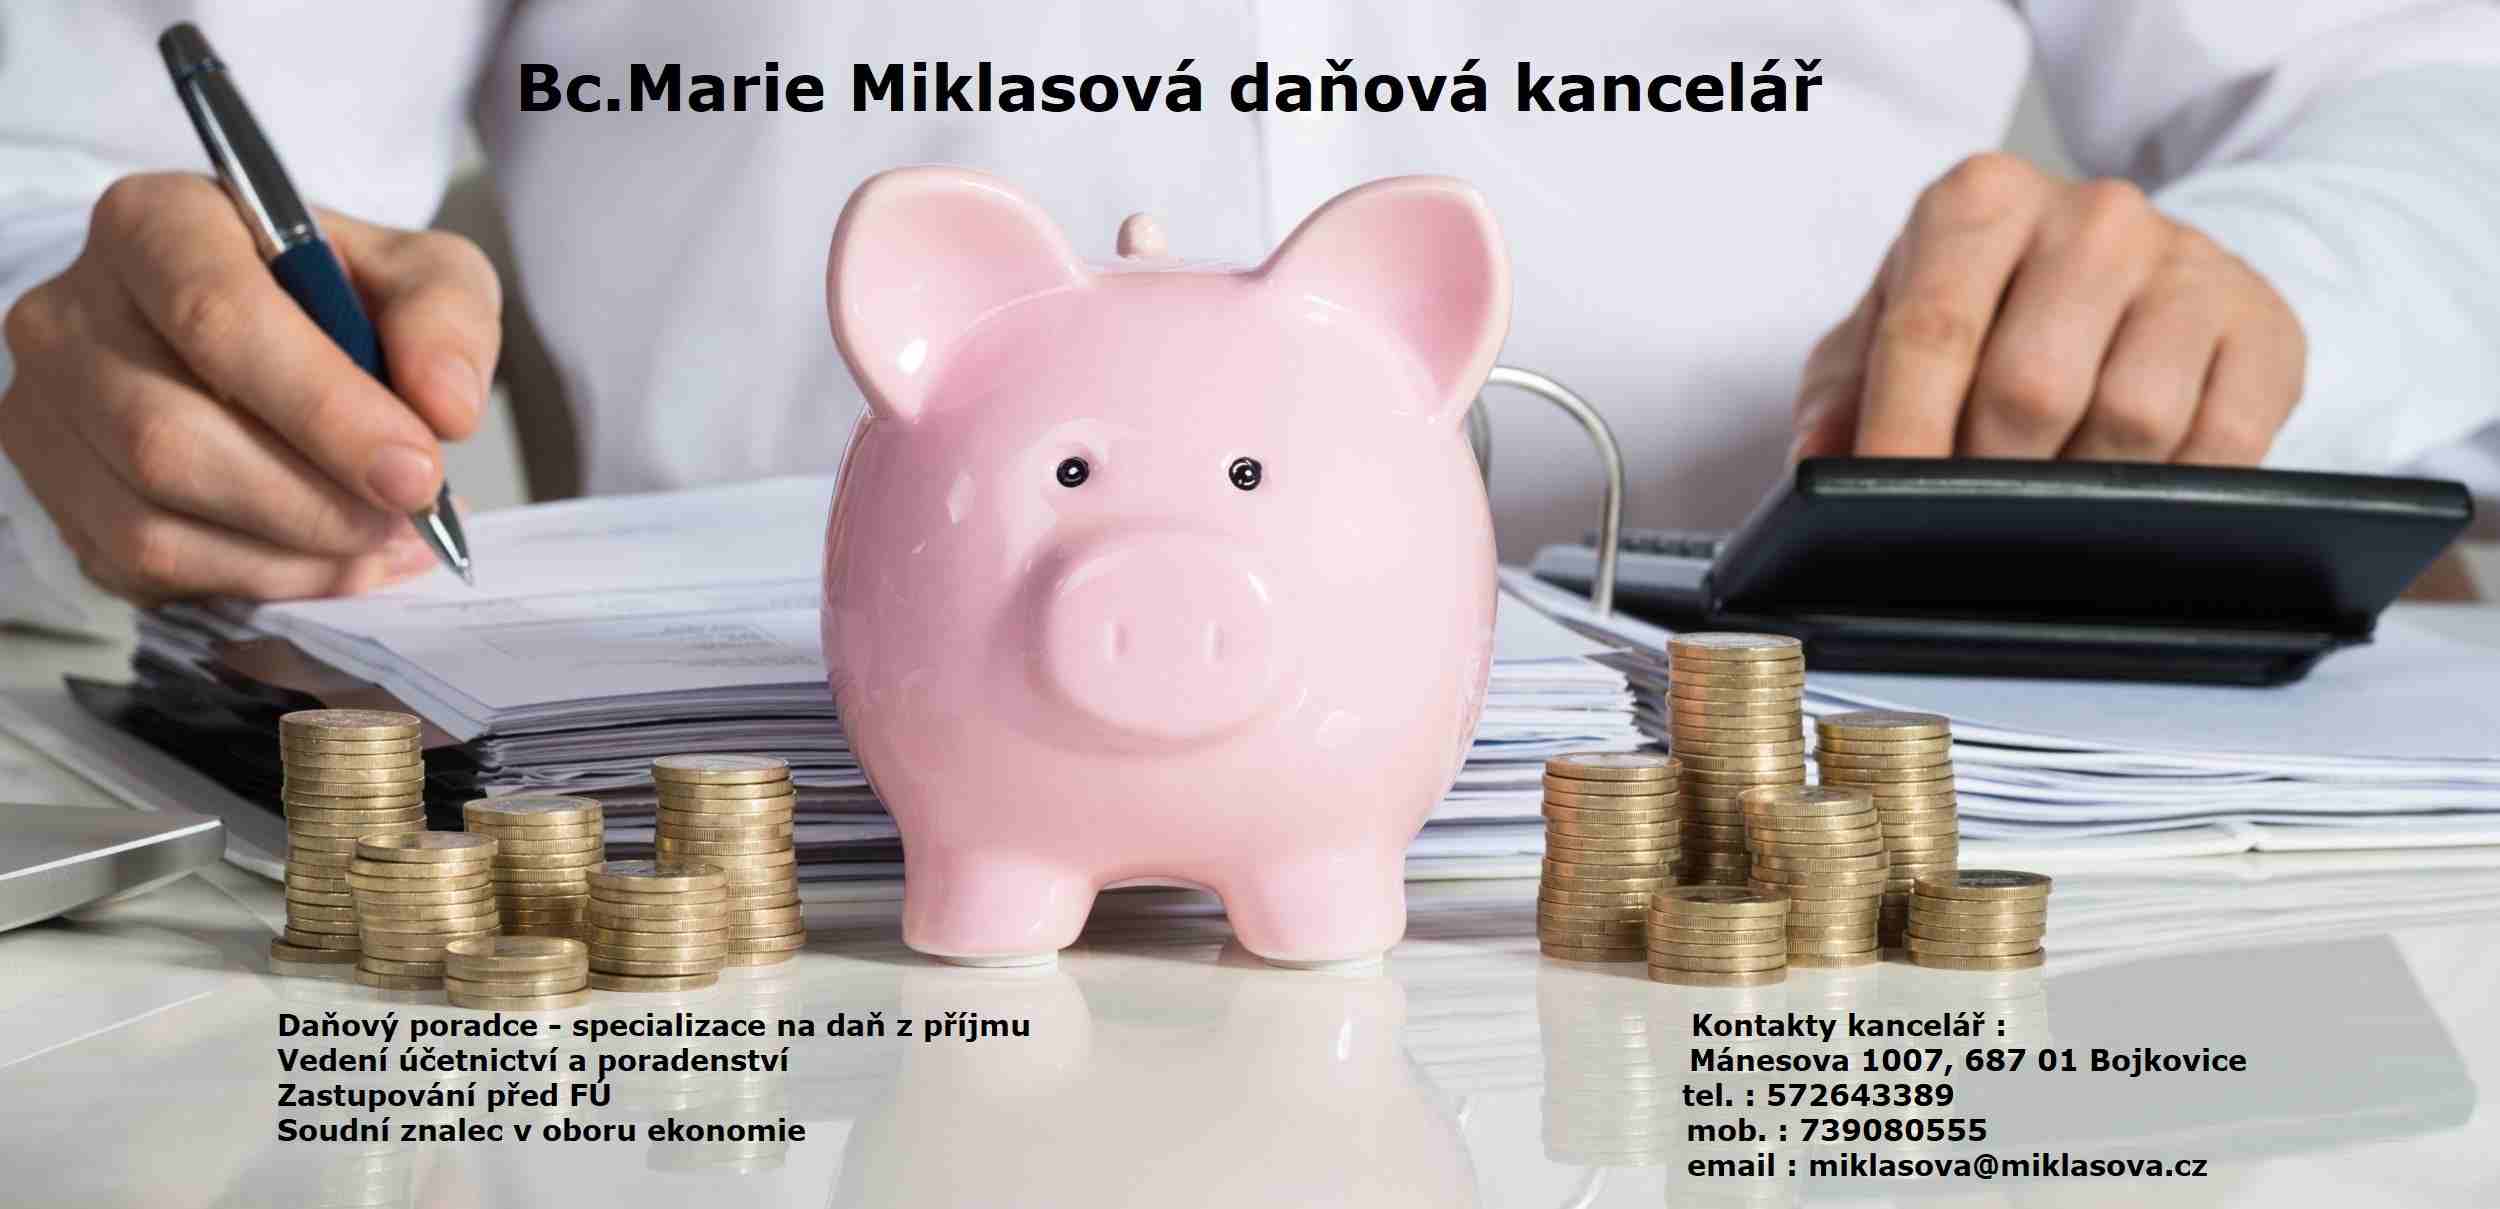 Bc. Marie Miklasová daňová kancelář